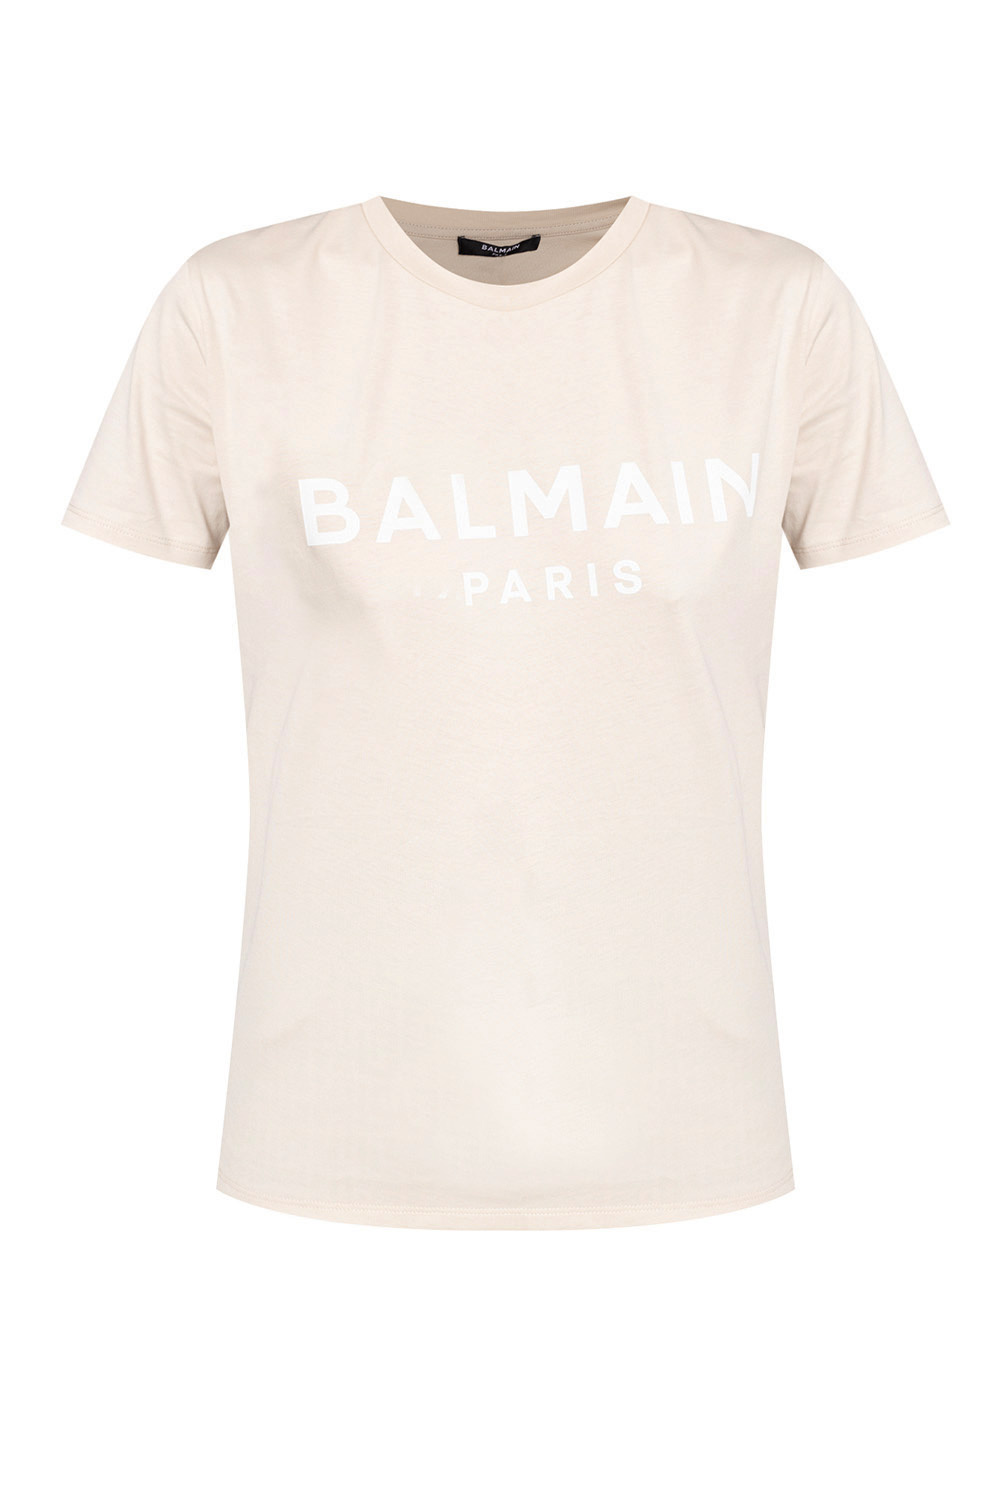 T-shirt Balmain - Lithuania